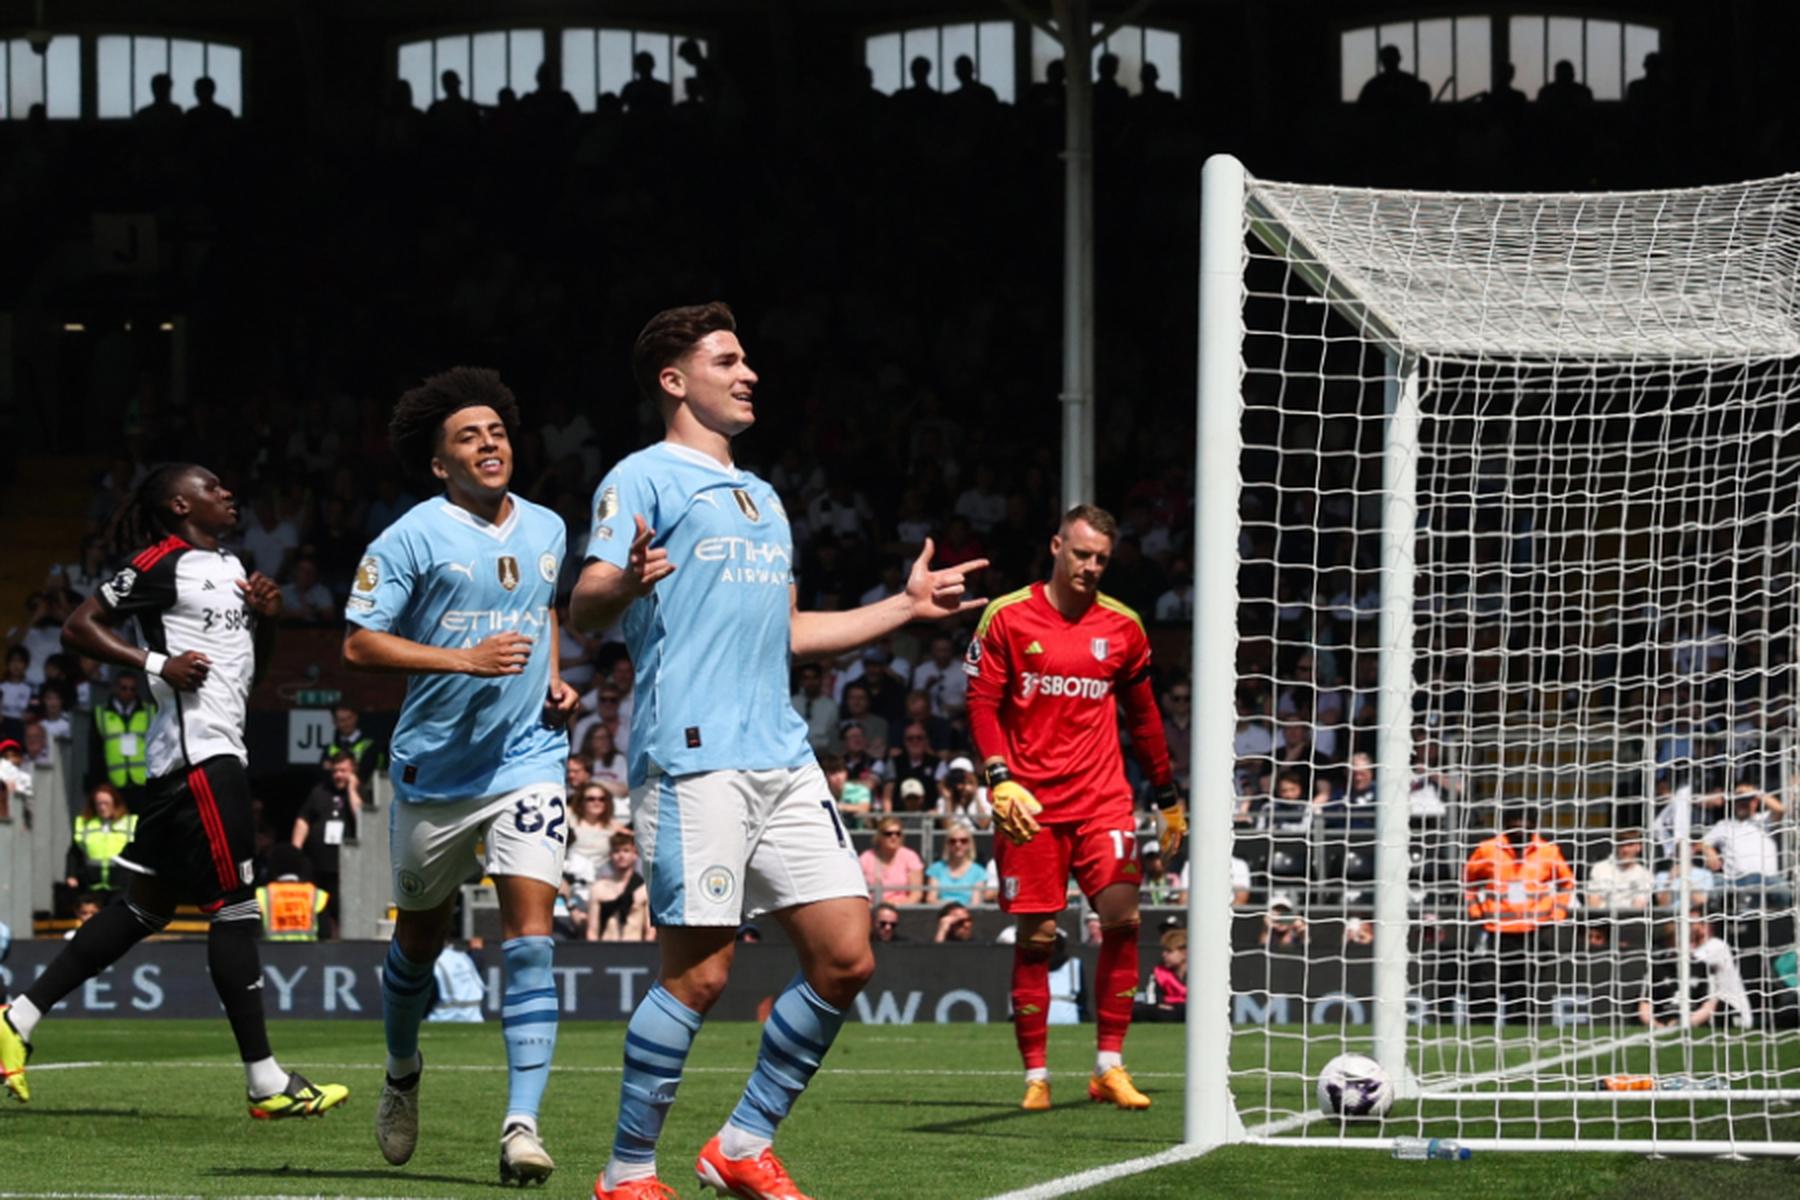 London: Manchester City nach 4:0 bei Fulham auf Meisterkurs